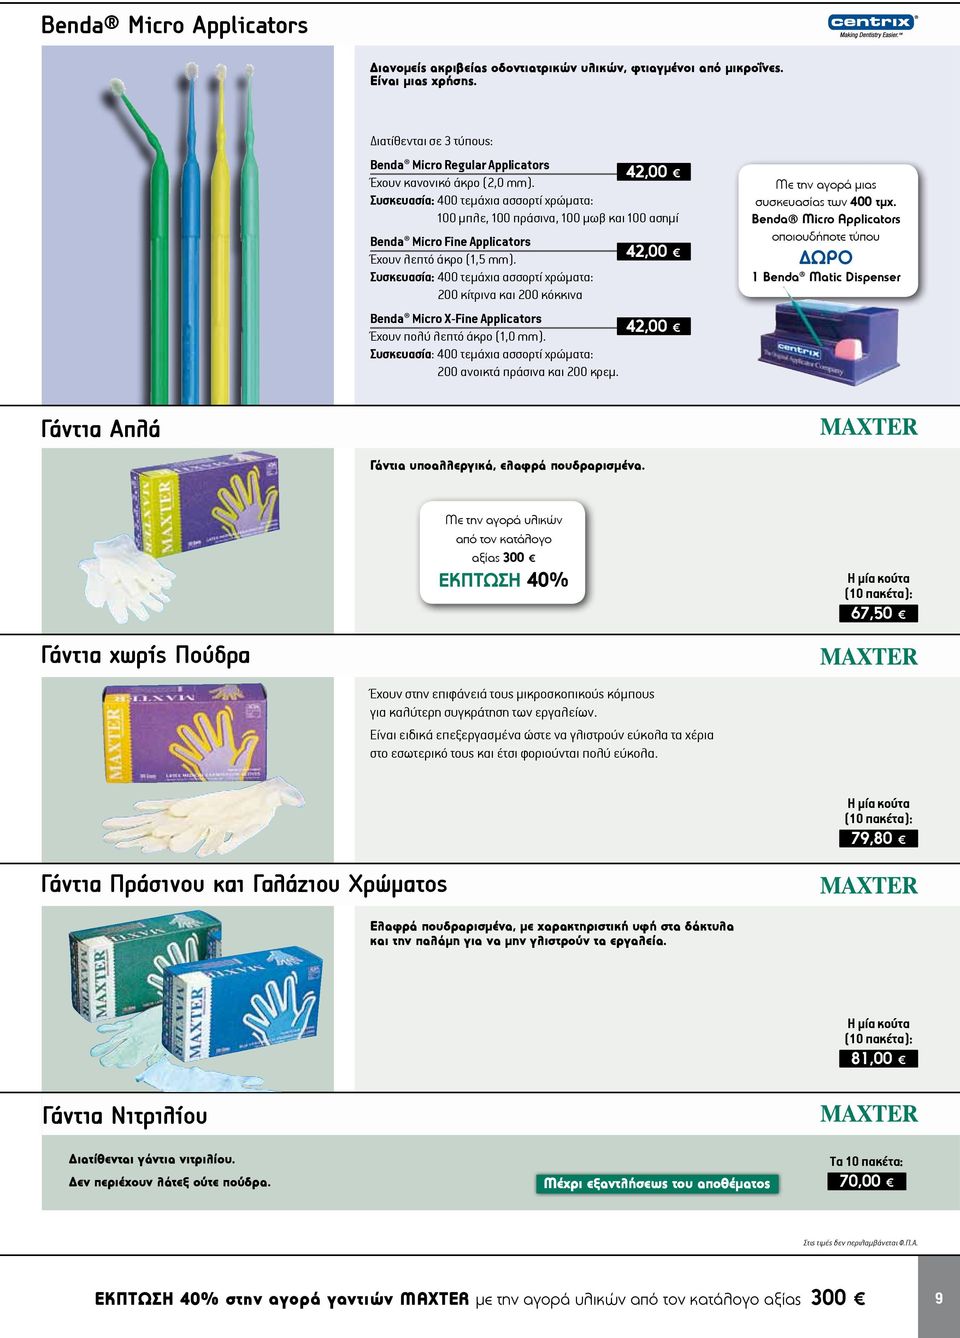 Συσκευασία: 400 τεμάχια ασσορτί χρώματα: 100 μπλε, 100 πράσινα, 100 μωβ και 100 ασημί Benda Micro Fine Applicators Έχουν λεπτό άκρο (1,5 mm).